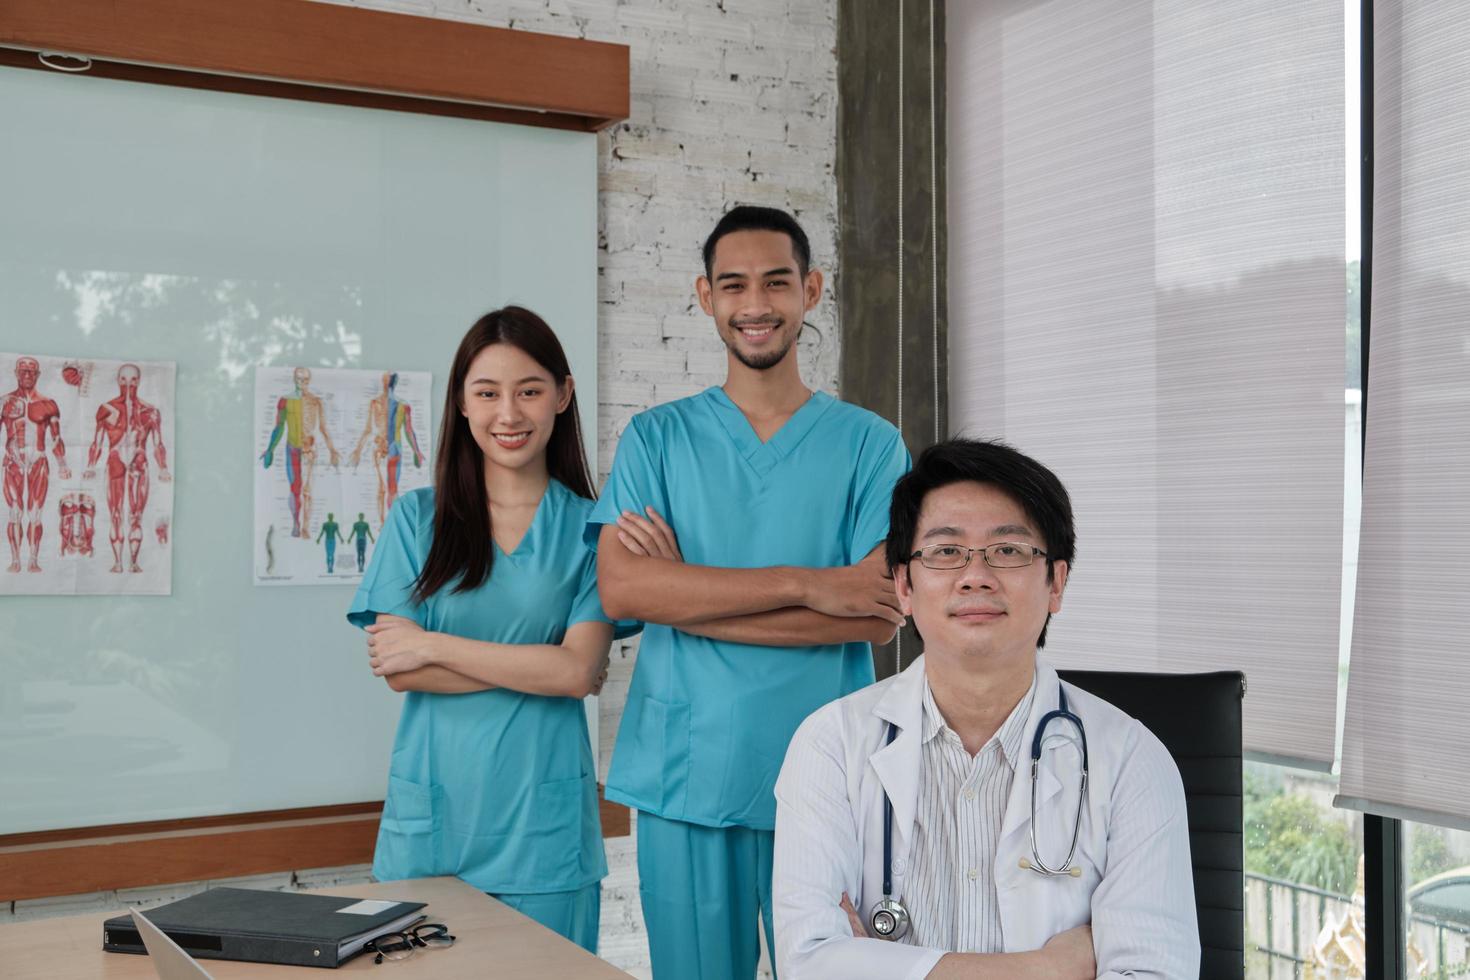 equipe de confiança de saúde, retrato de três jovens médicos de etnia asiática de uniforme com estetoscópio, sorrindo e olhando para a câmera na clínica, pessoas com experiência em tratamento profissional. foto